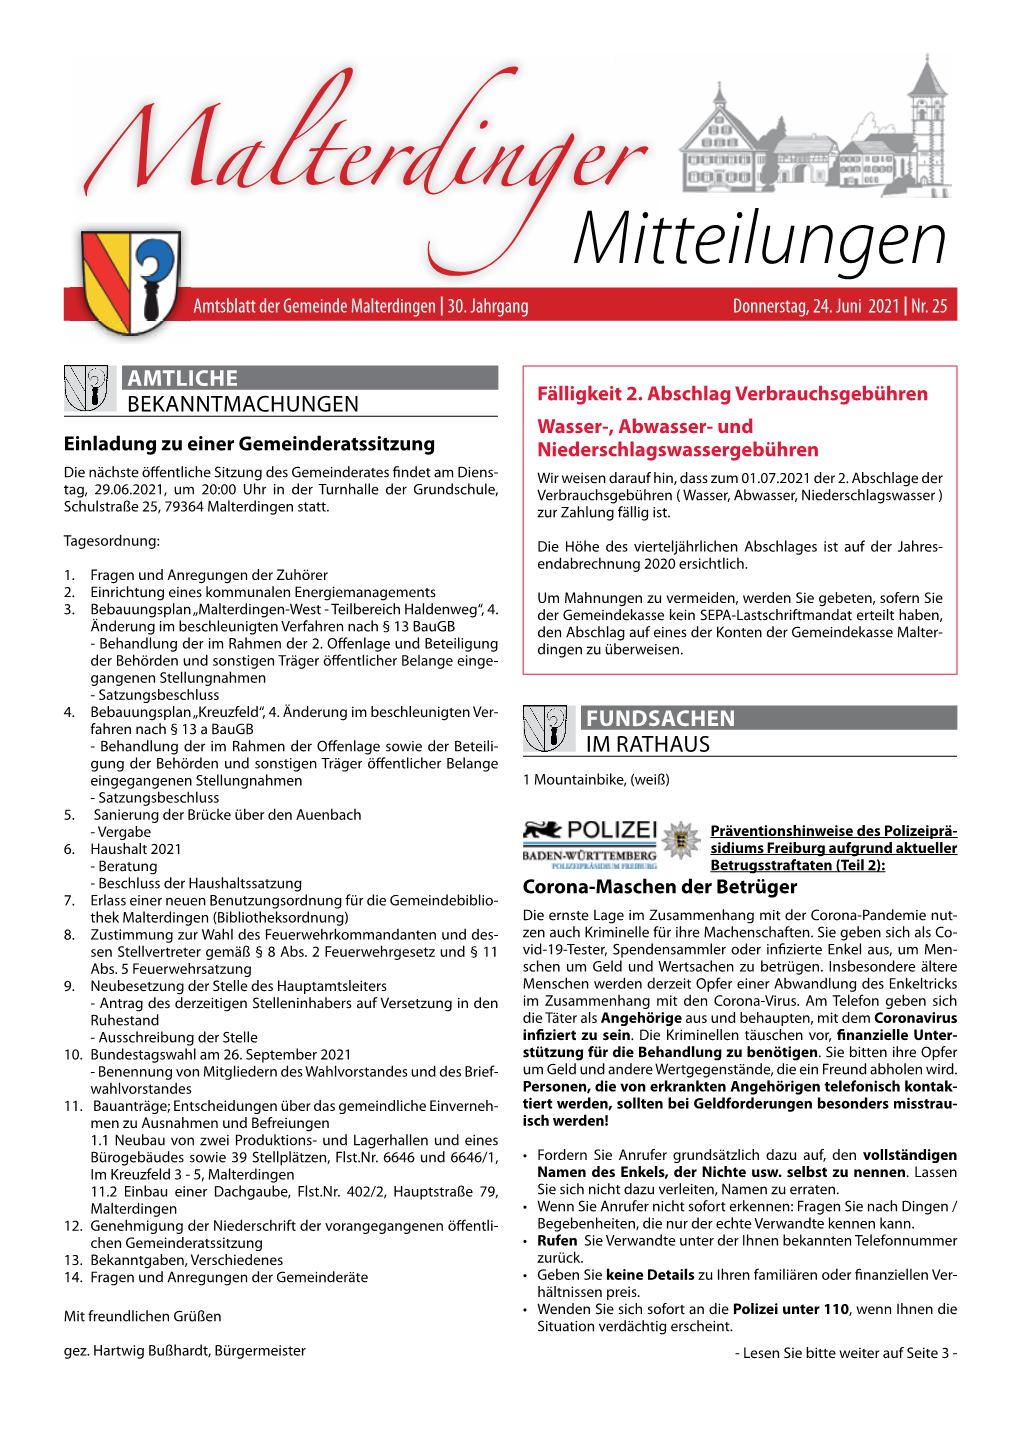 Mitteilungsblatt Nr. 25 Vom 24. Juni 2021 (PDF)